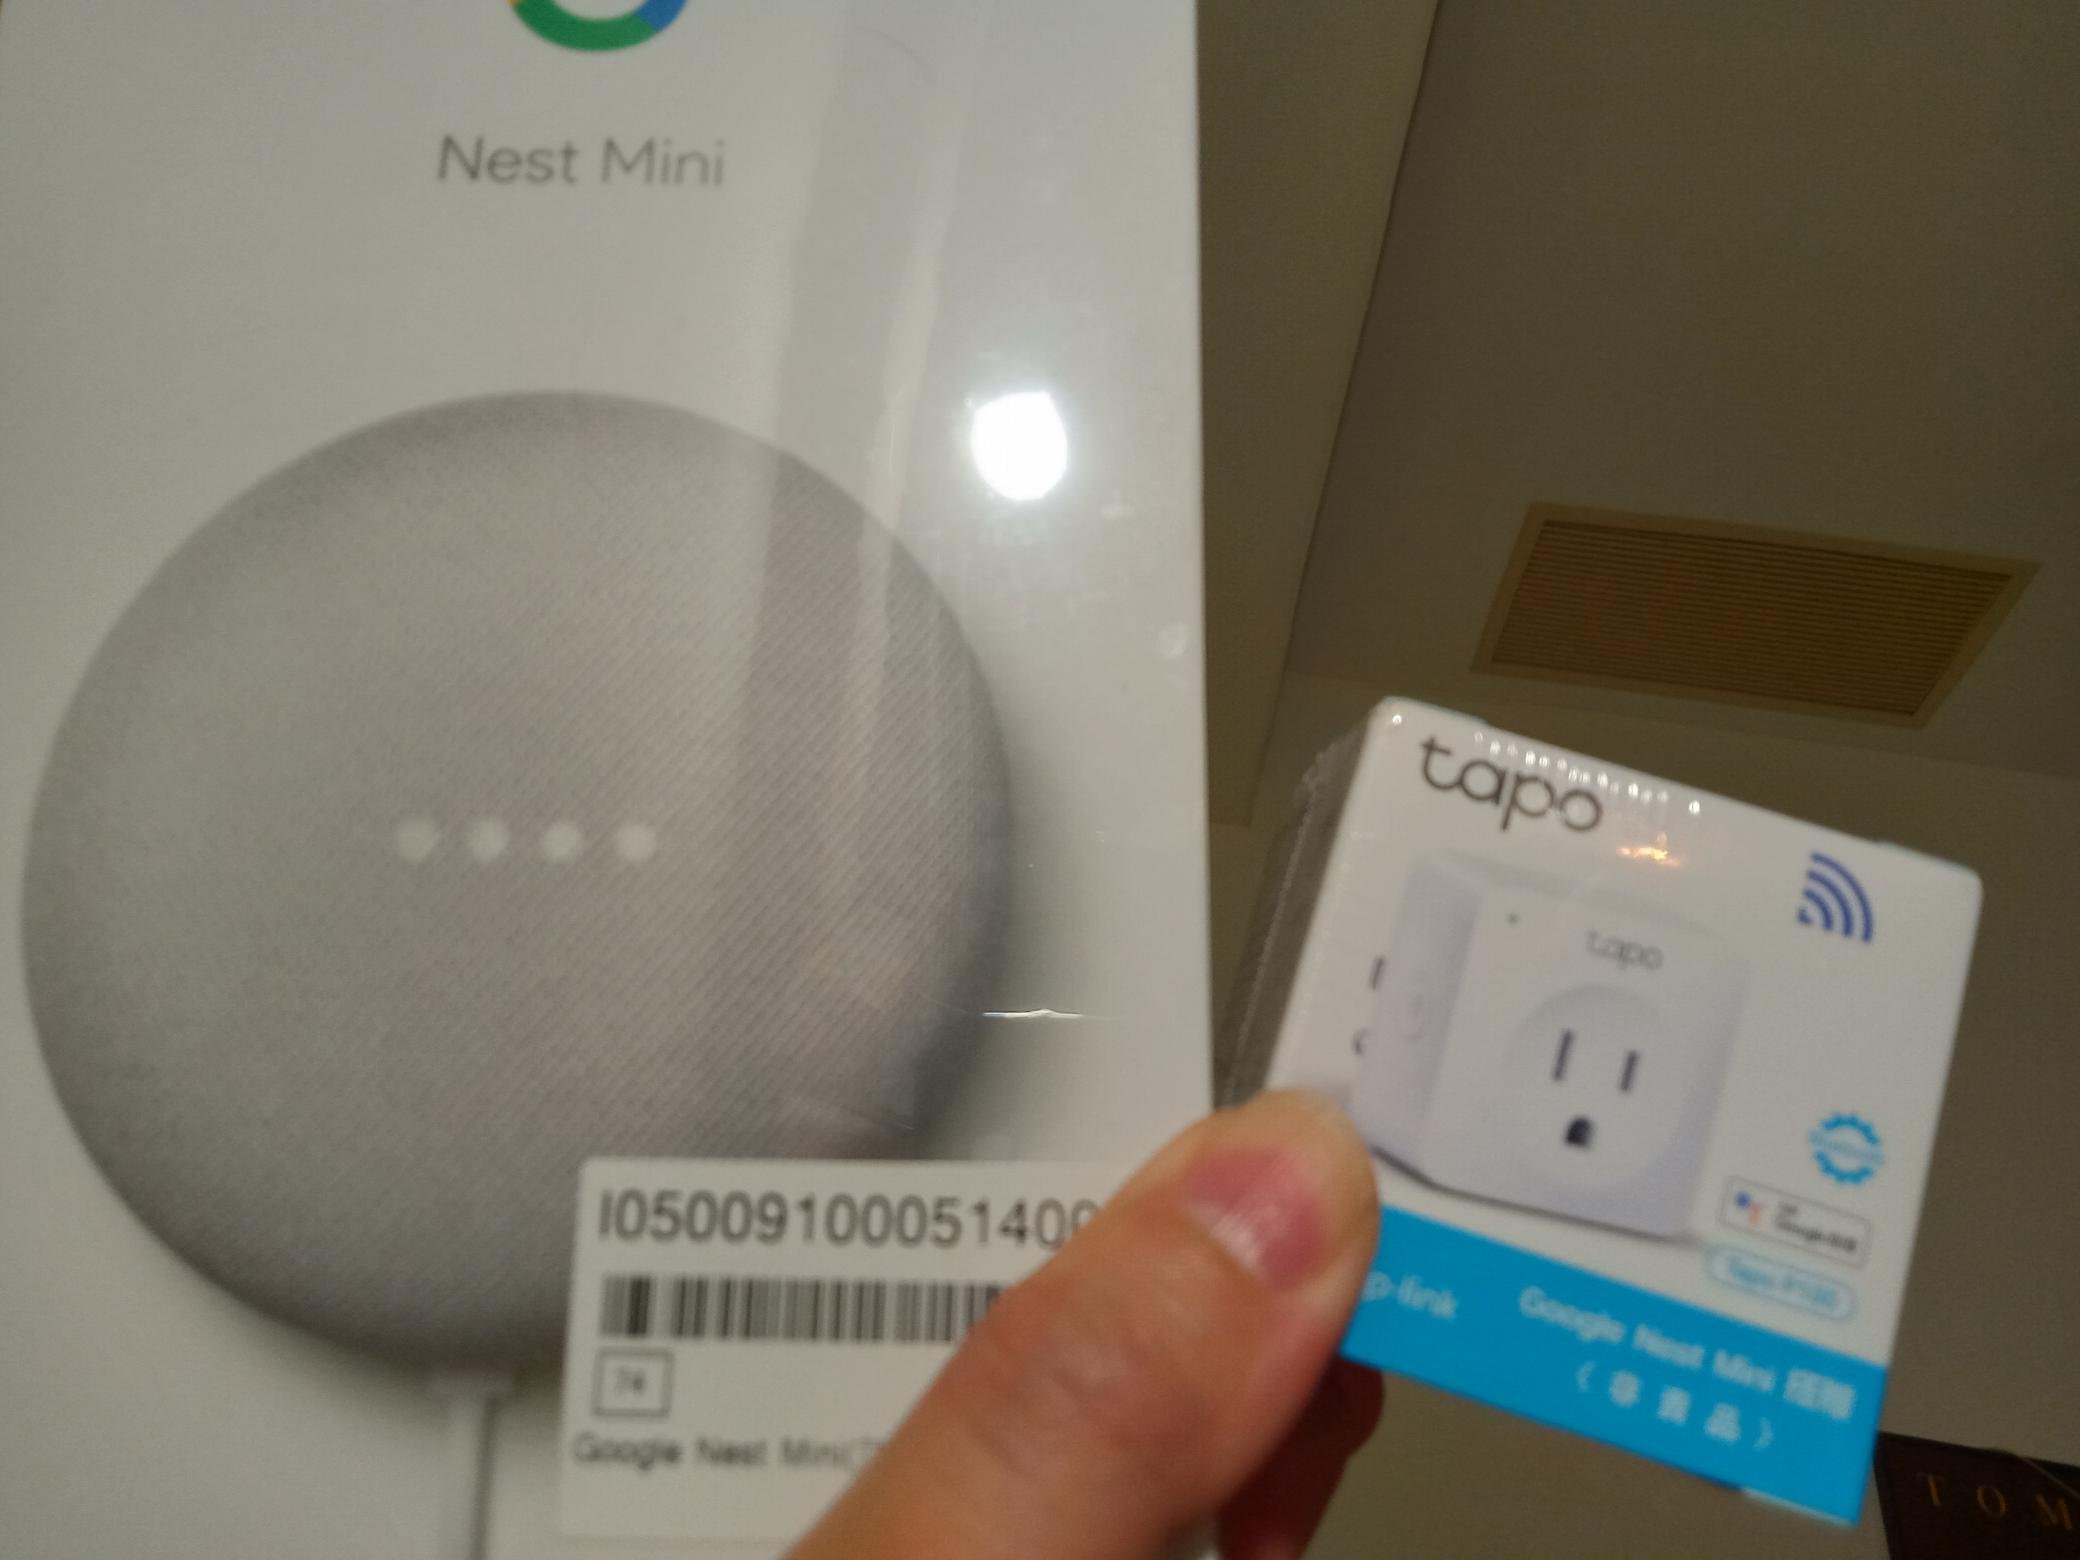 大媽桂二手屋，全新未拆Google Nest Mini第二代音箱，搭贈Tapo P100 Live Smarter 迷你 wifi無限網路雲端智慧插座，網路最低